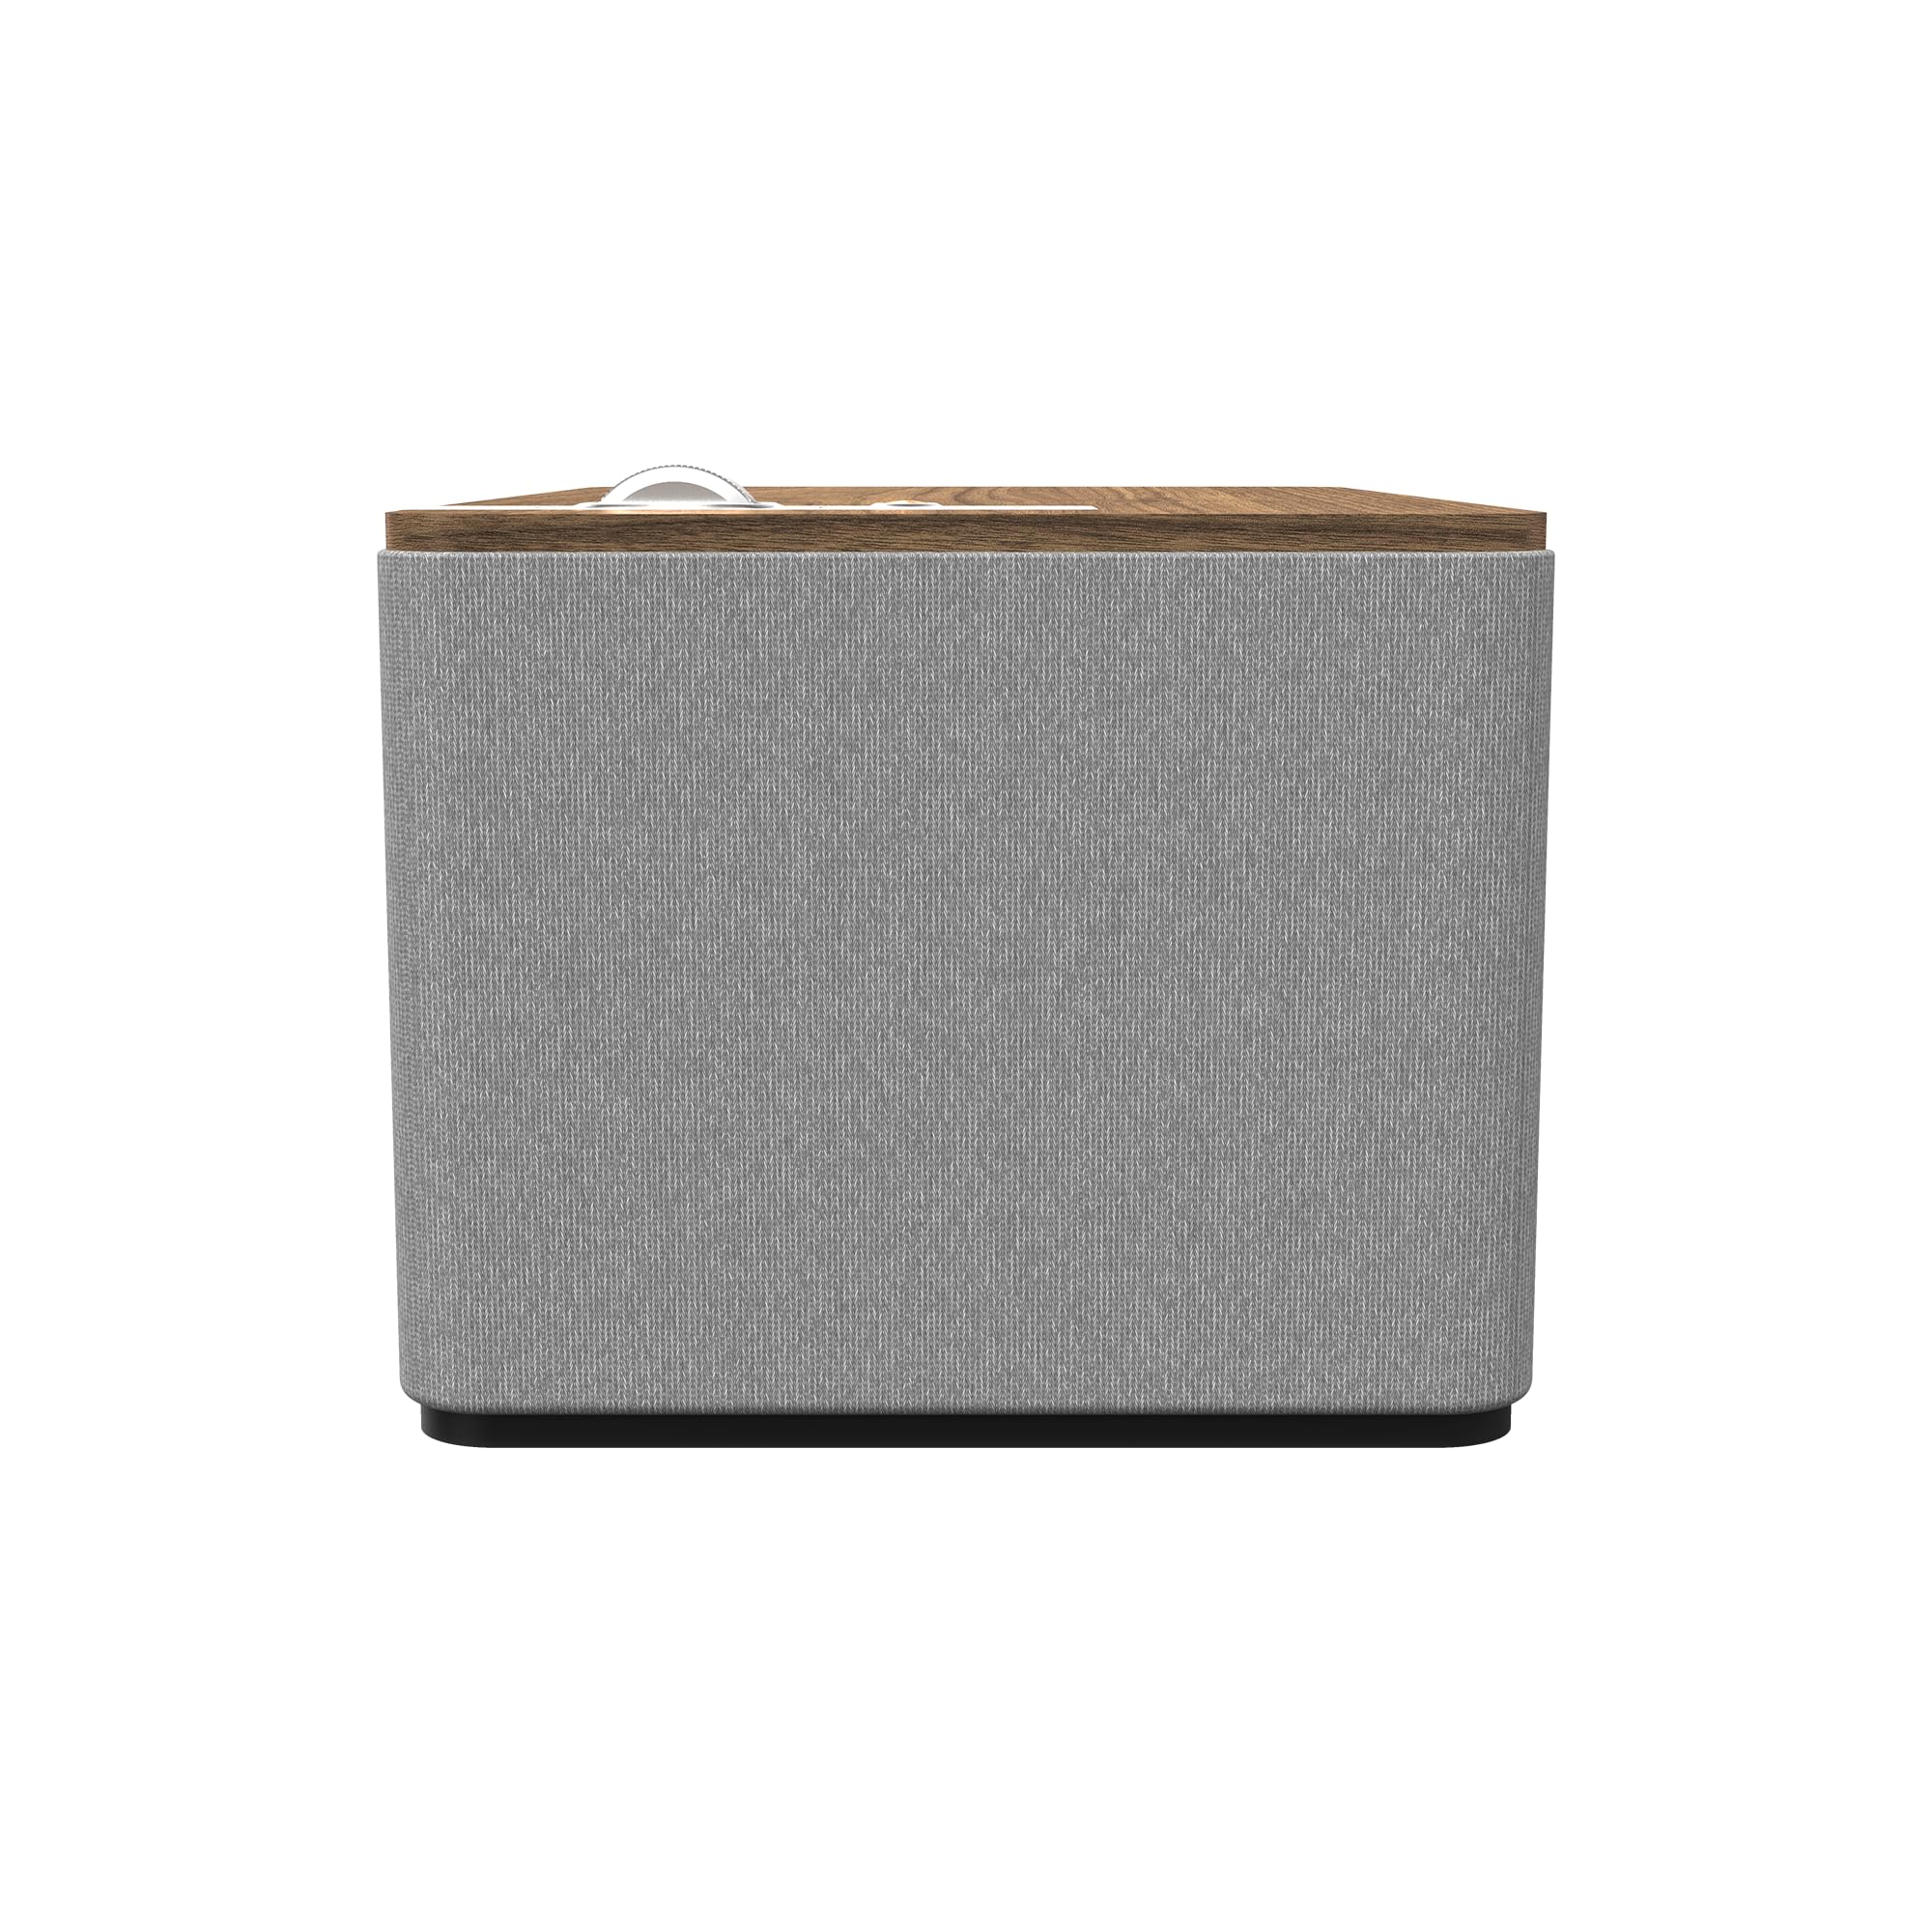 Klipsch The Three Plus Premium Bluetooth Speaker System, Walnut